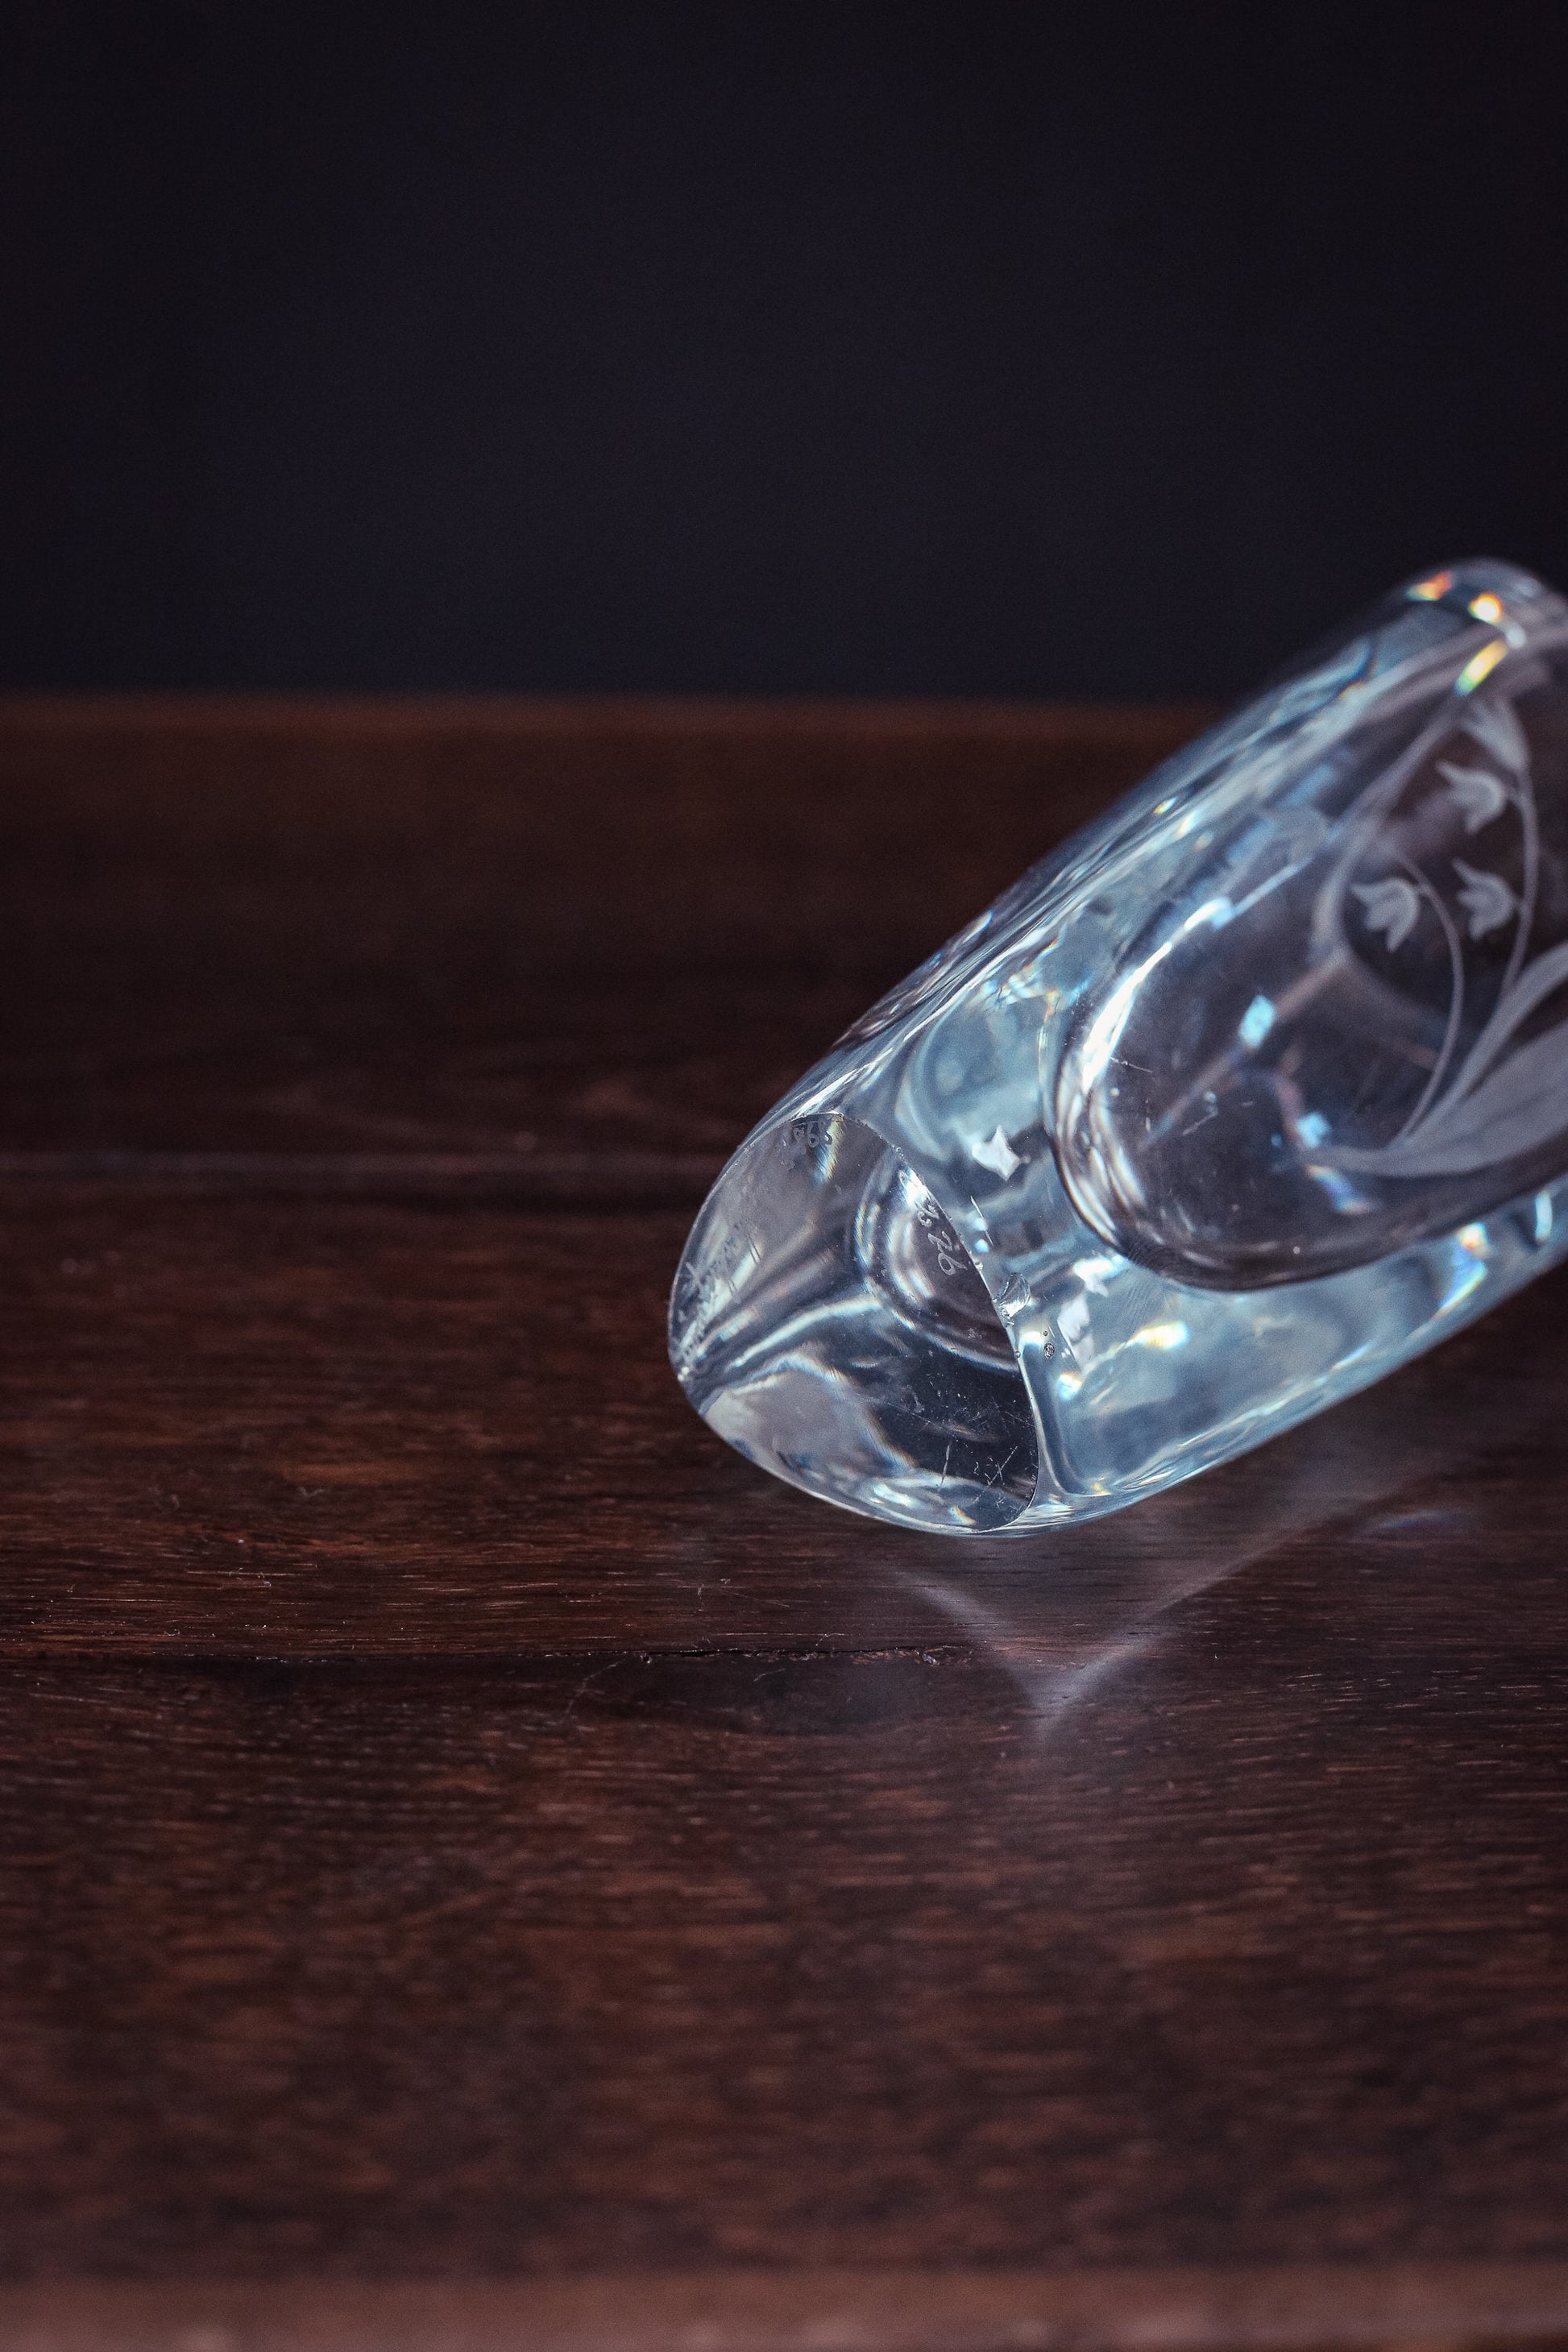 Lily of Valley Signed Strombergshyttan Vase - Vintage Swedish Etched Crystal Art Glass Vase